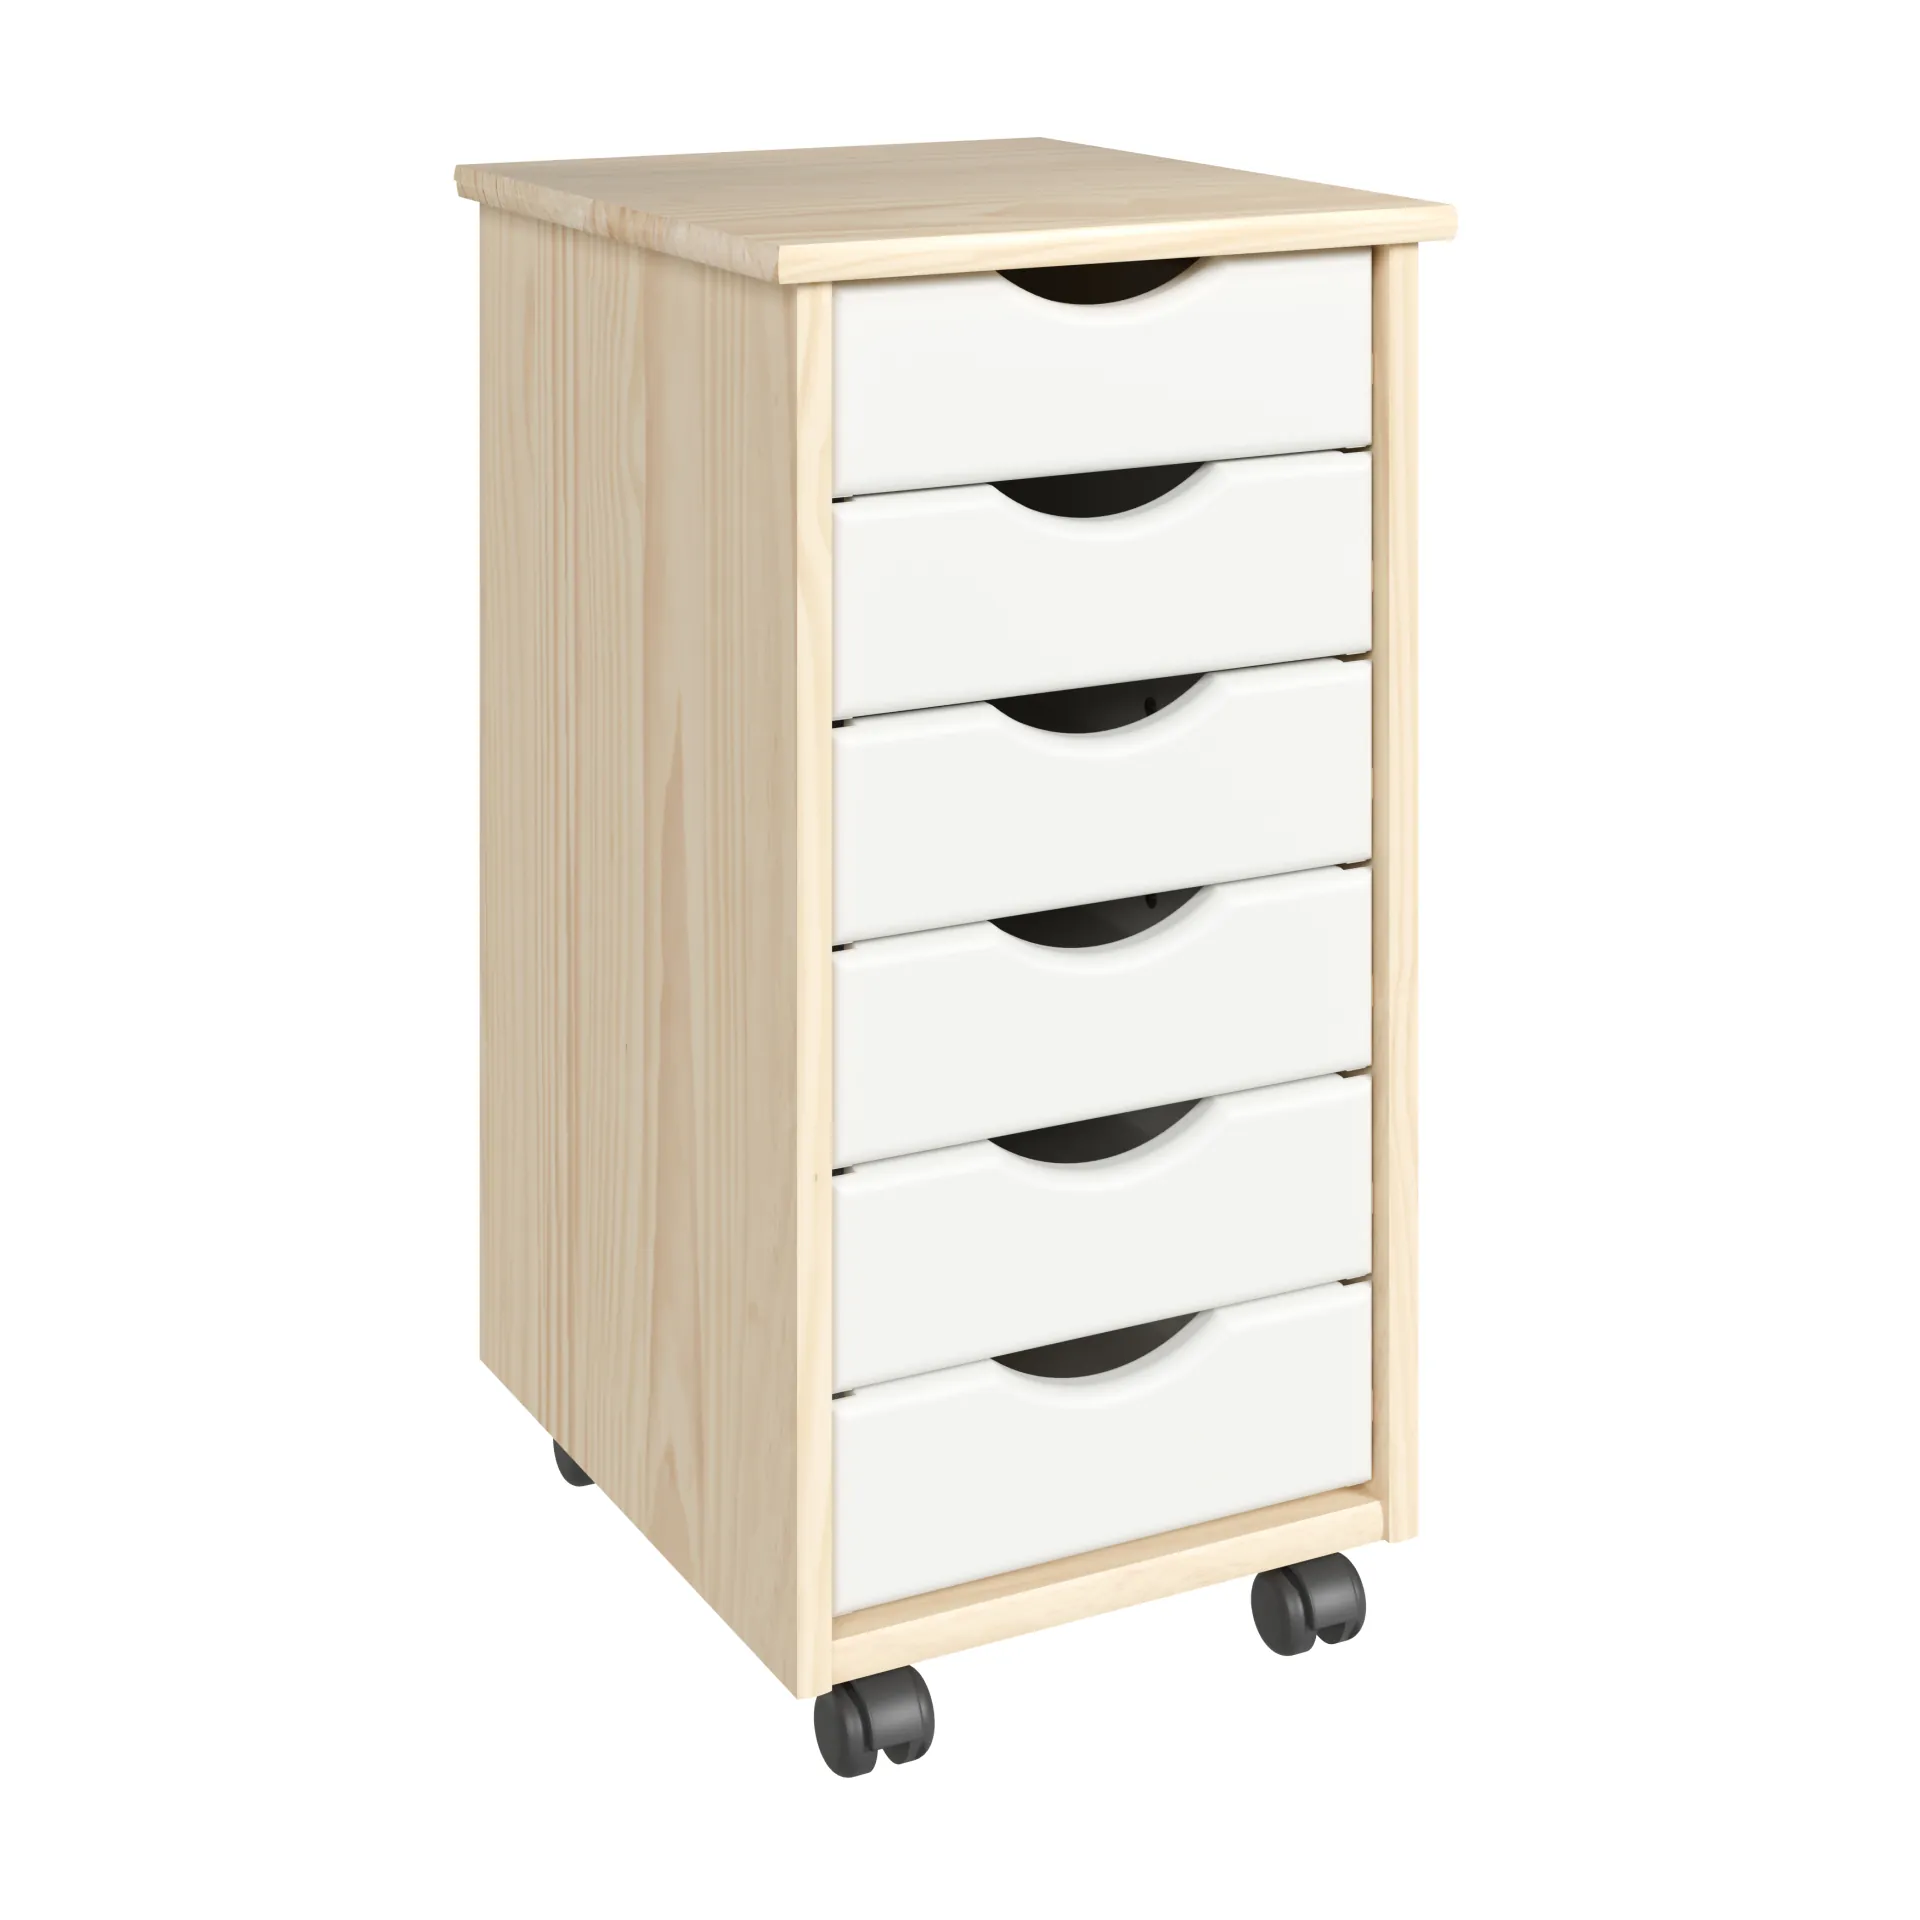 Adeptus White 6-Drawer Solid Wood Mobile Storage Cart